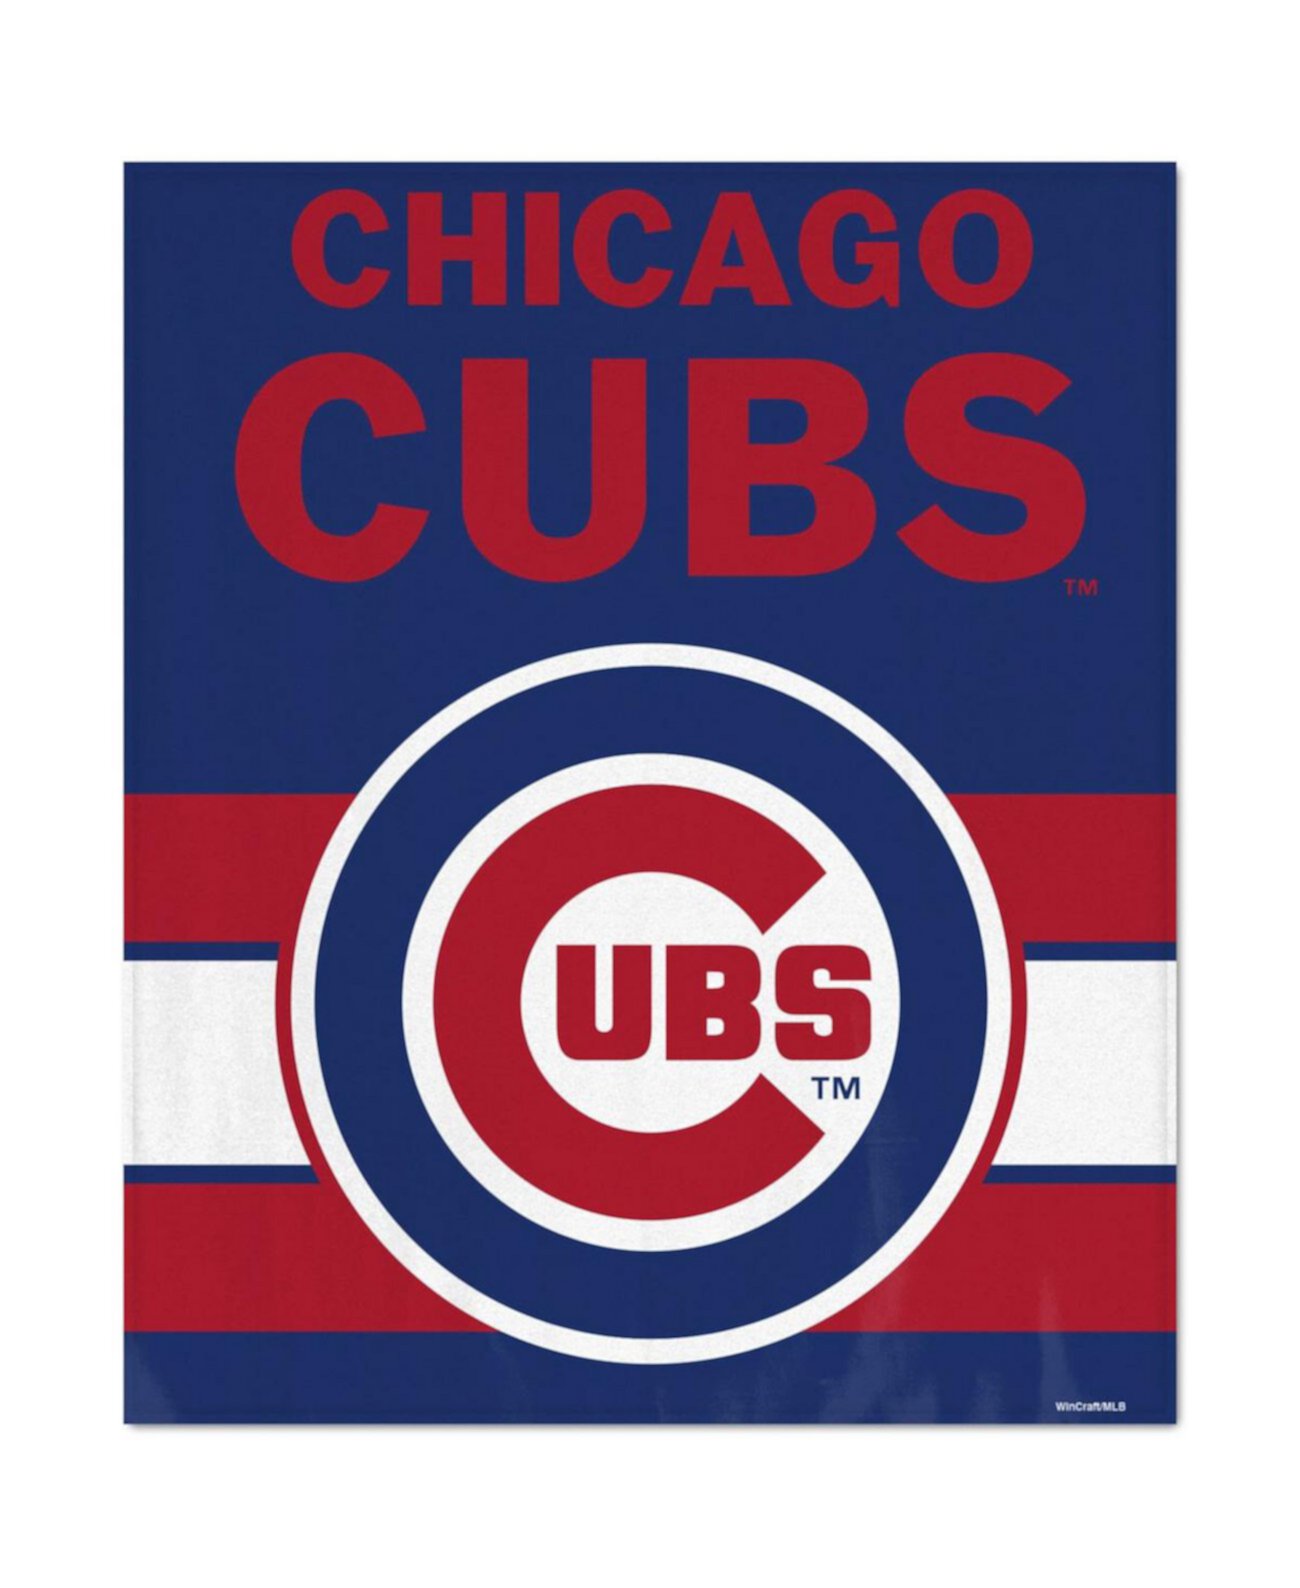 Ультраплюшевое покрывало Chicago Cubs размером 50 x 60 дюймов Wincraft